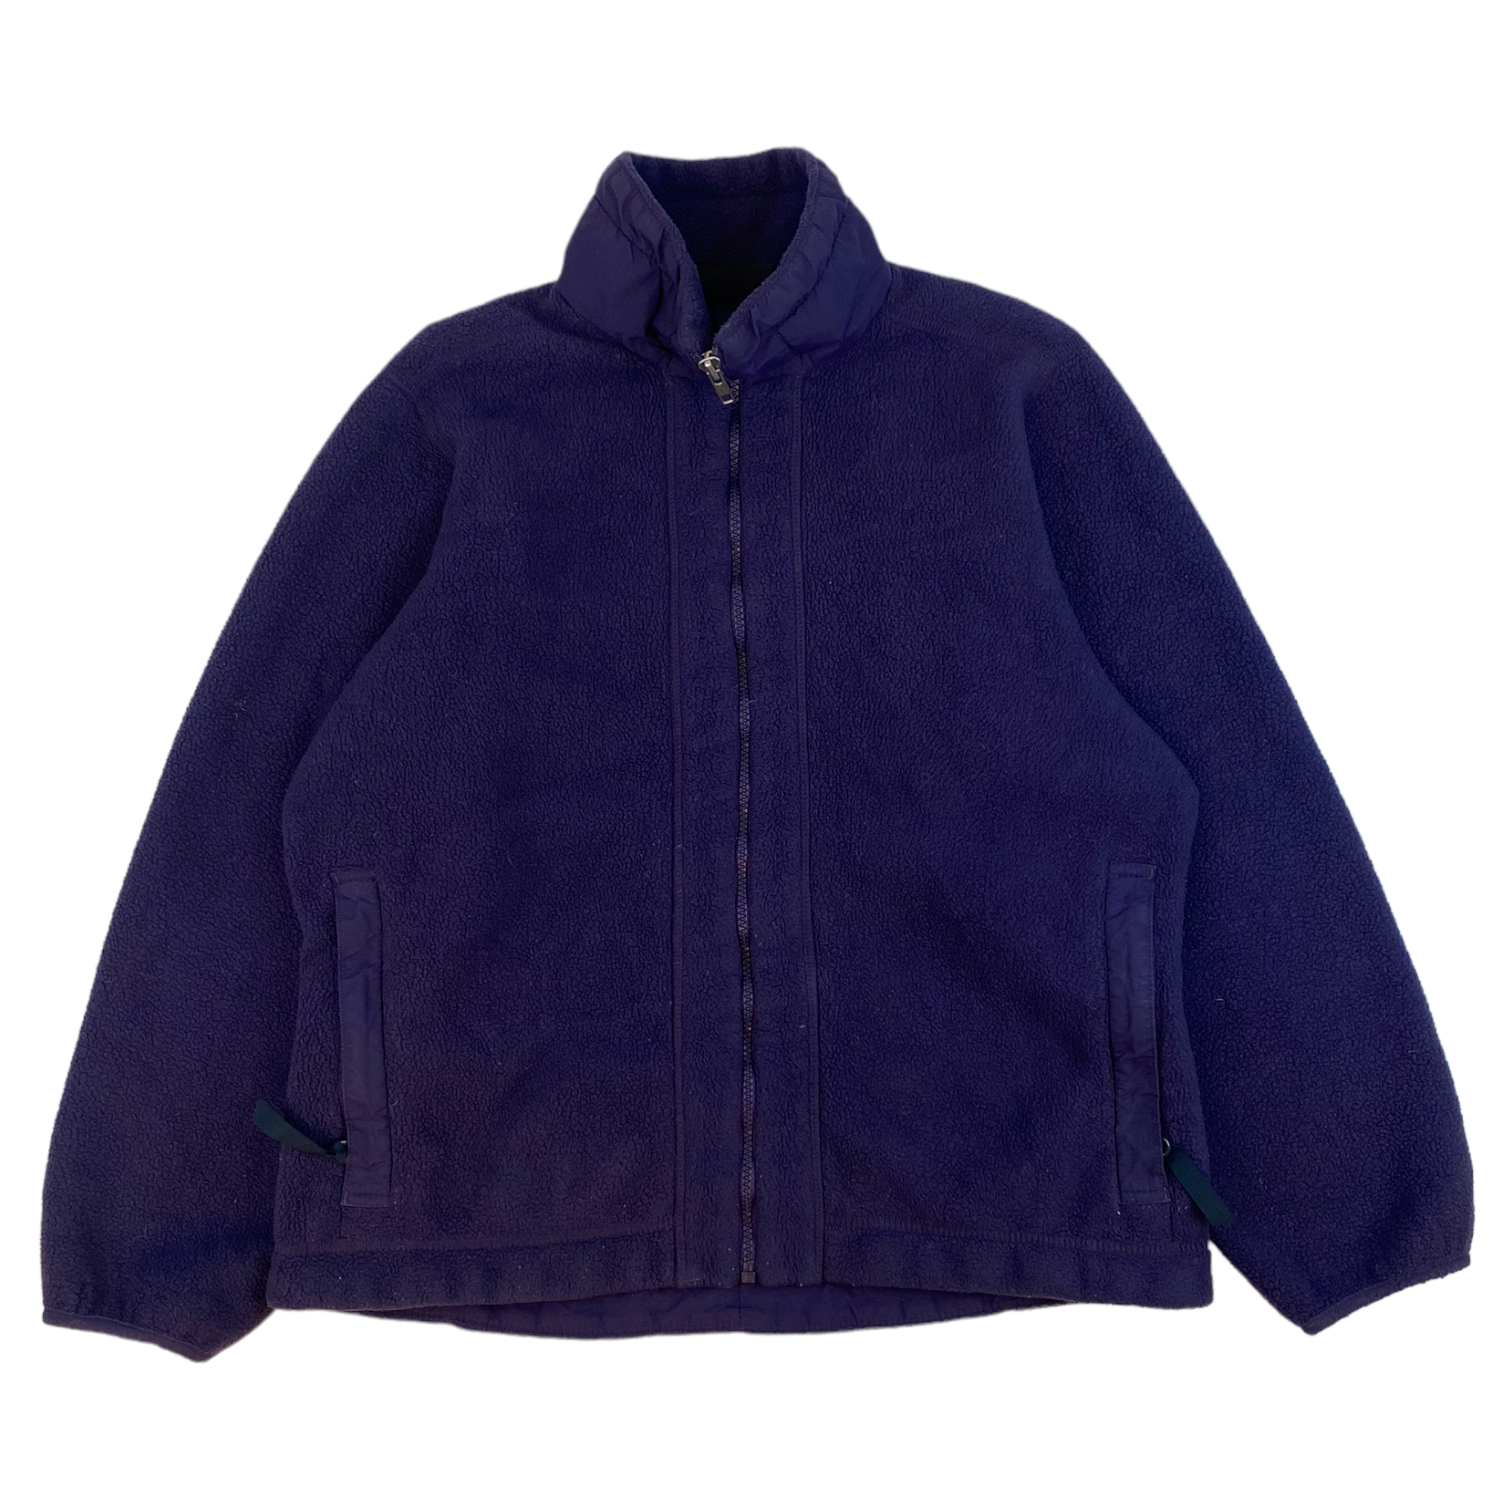 Vintage Patagonia Full Zip Fleece Purple